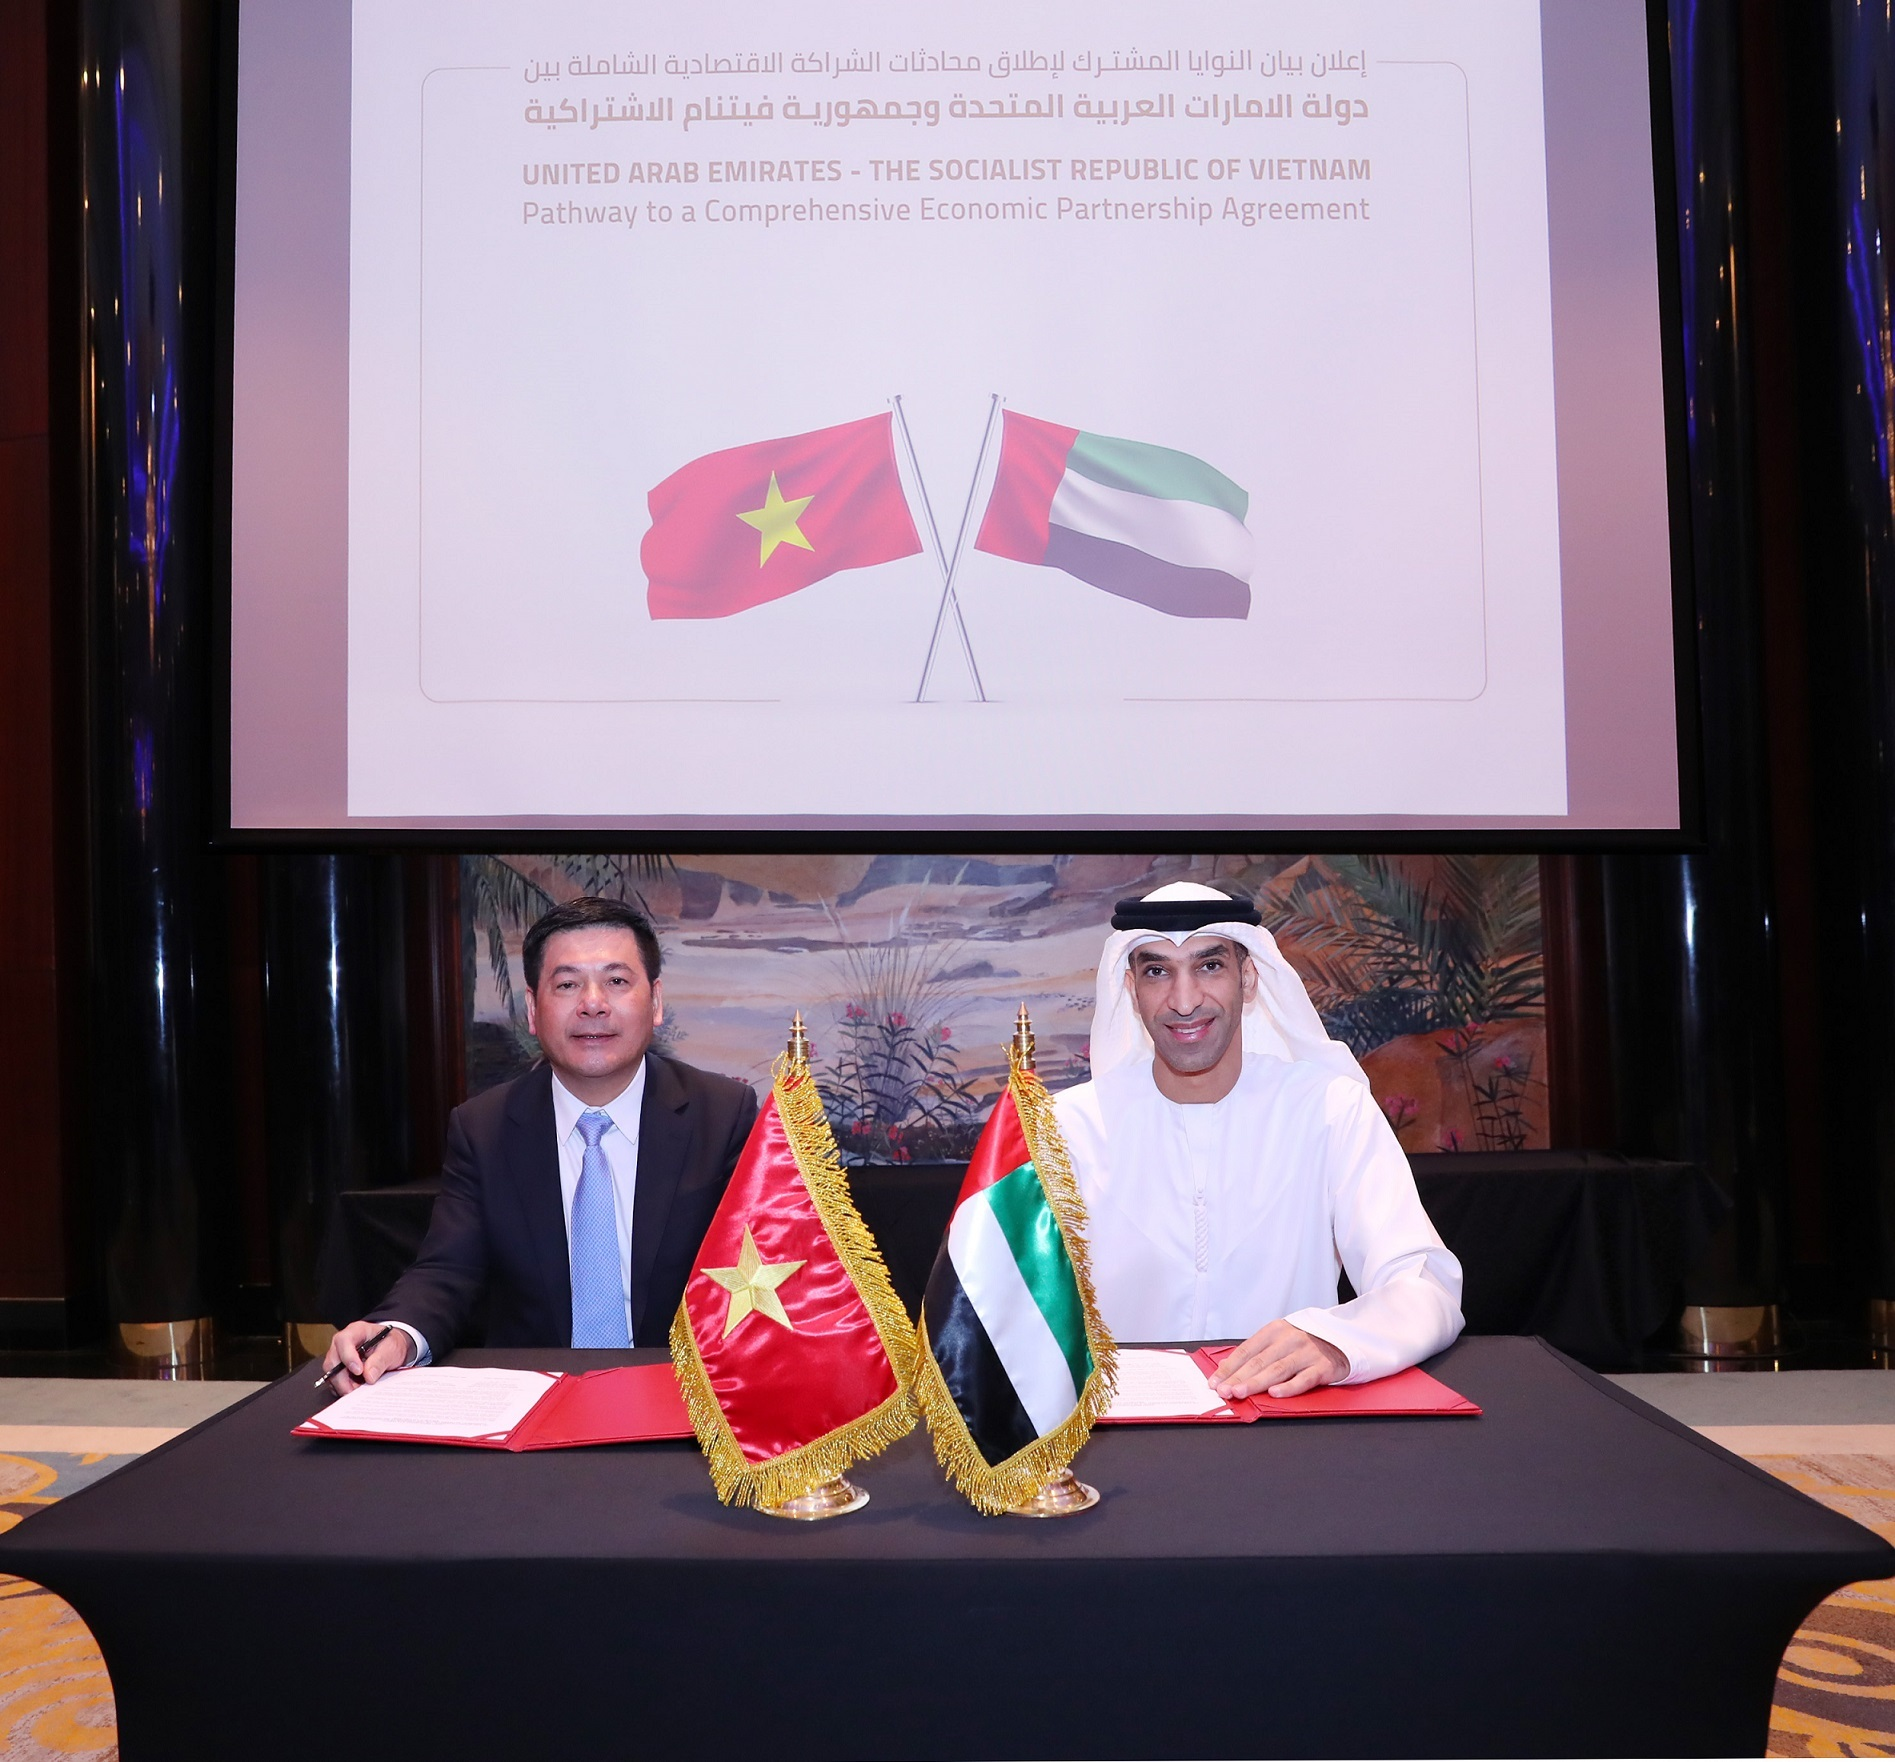 الإمارات وفيتنام توقعان إعلانًا لبدء محادثات حول اتفاقية شراكة اقتصادية شاملة